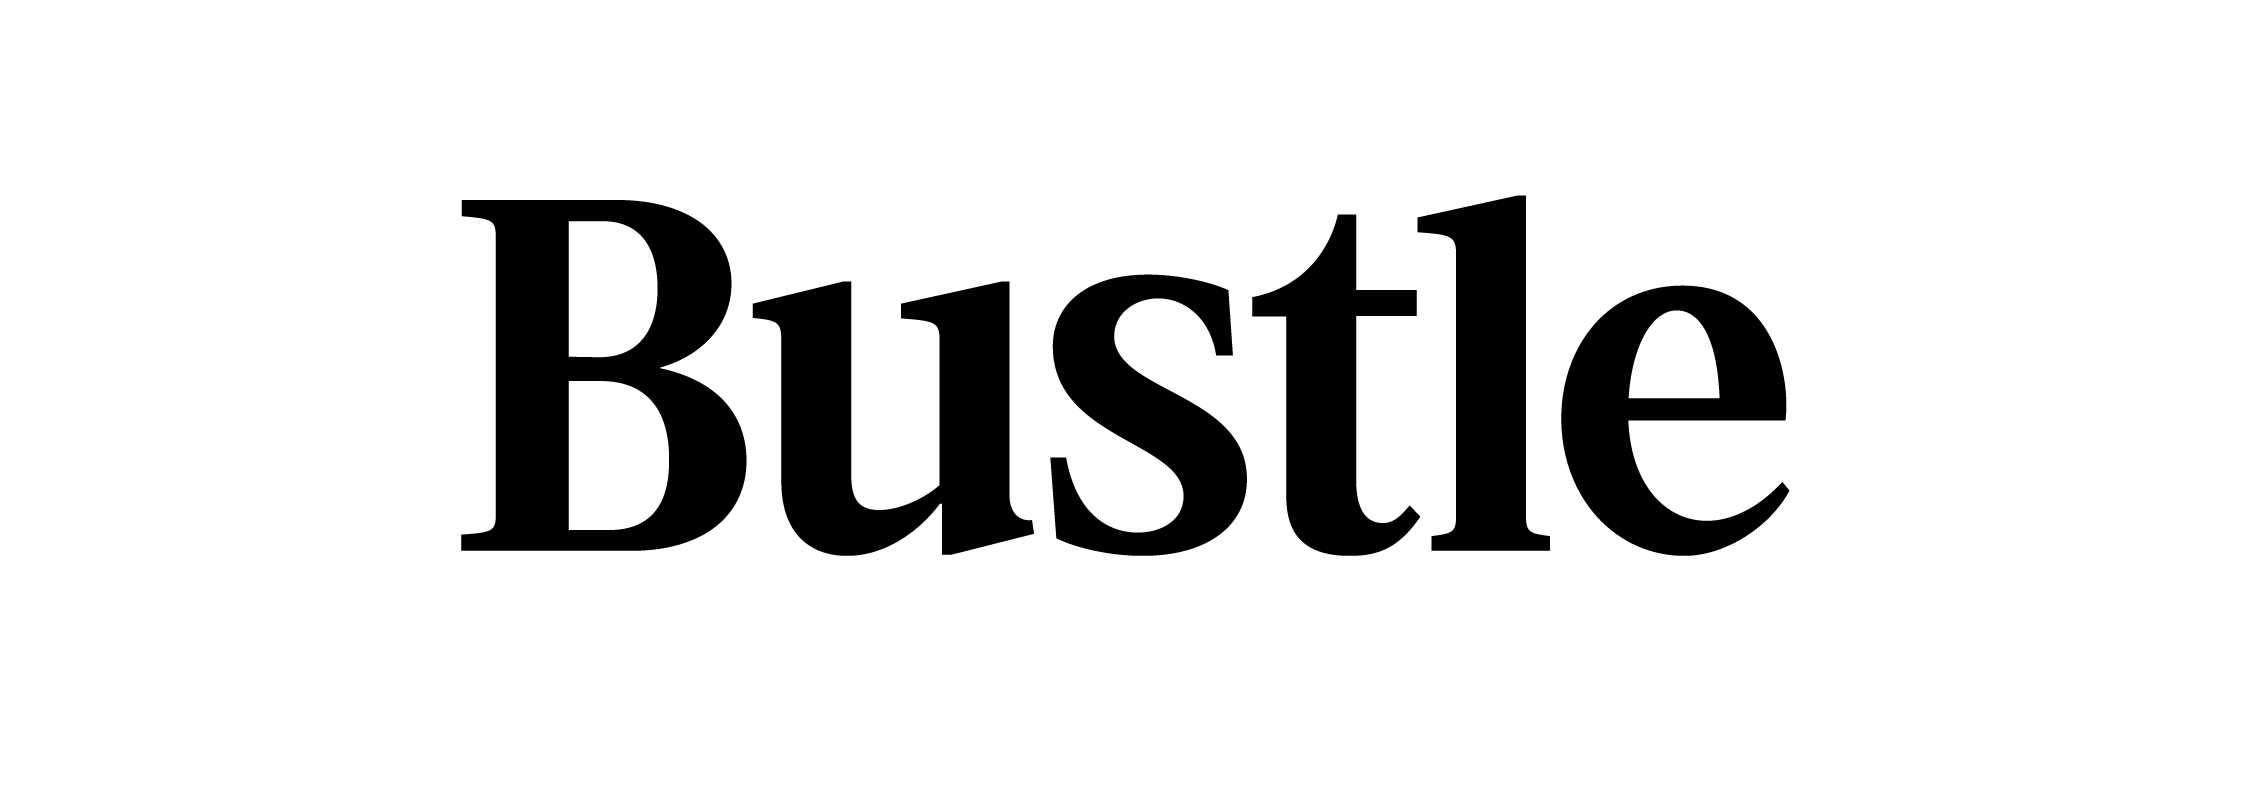 bustle magazine logo